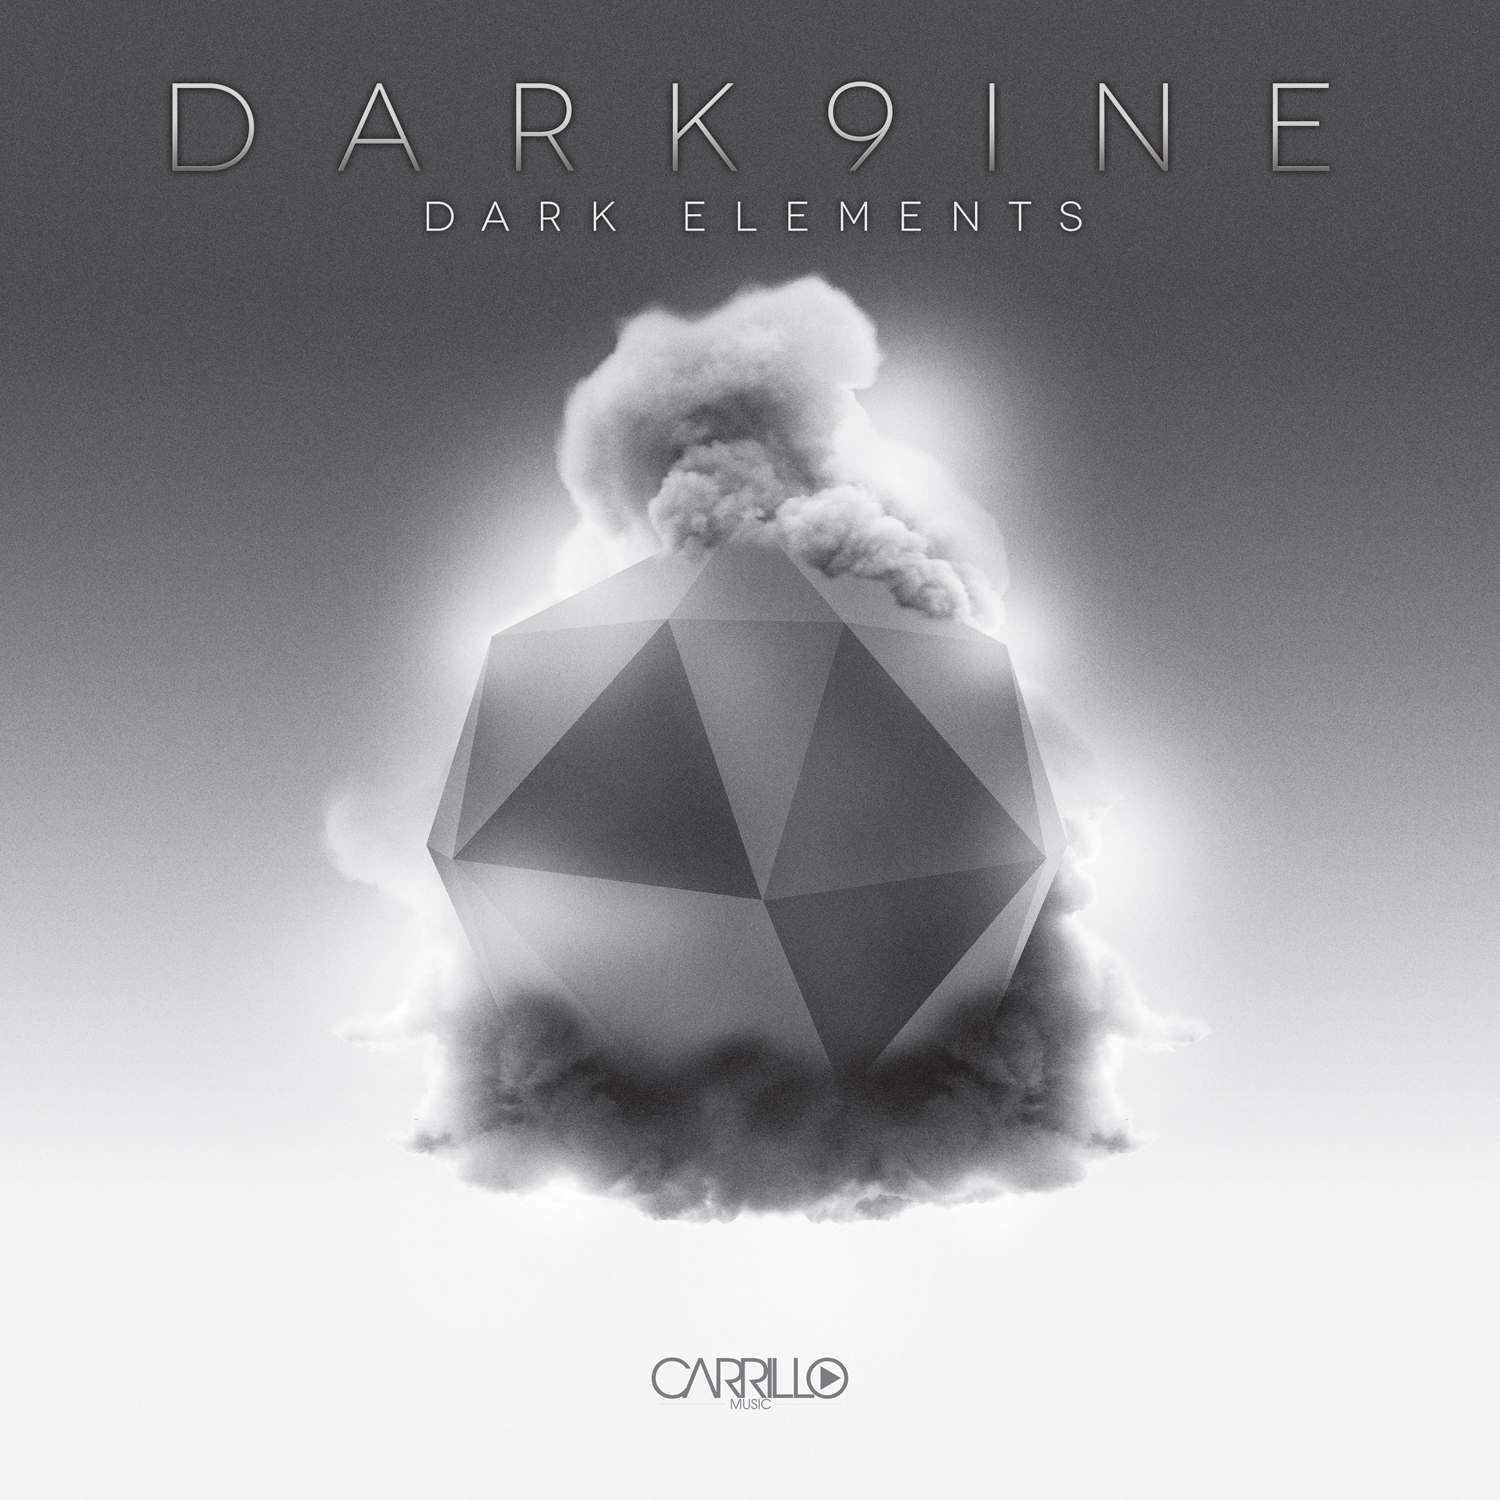 dark9nine-Dark-Elements-12x12